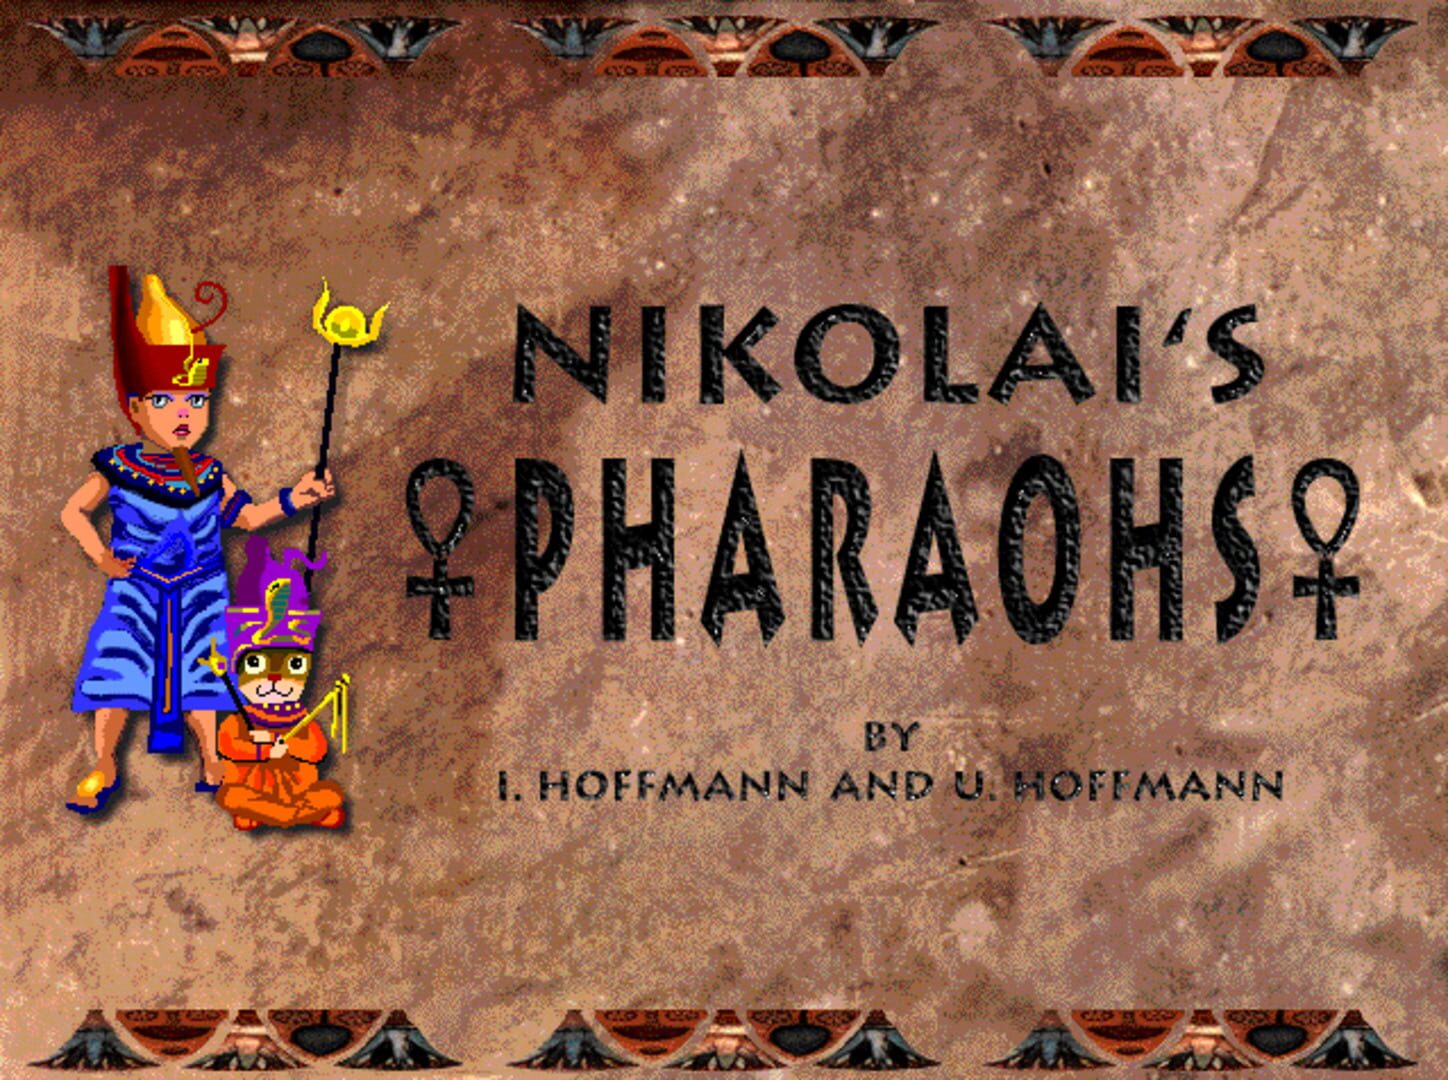 Nikolai's Pharaohs